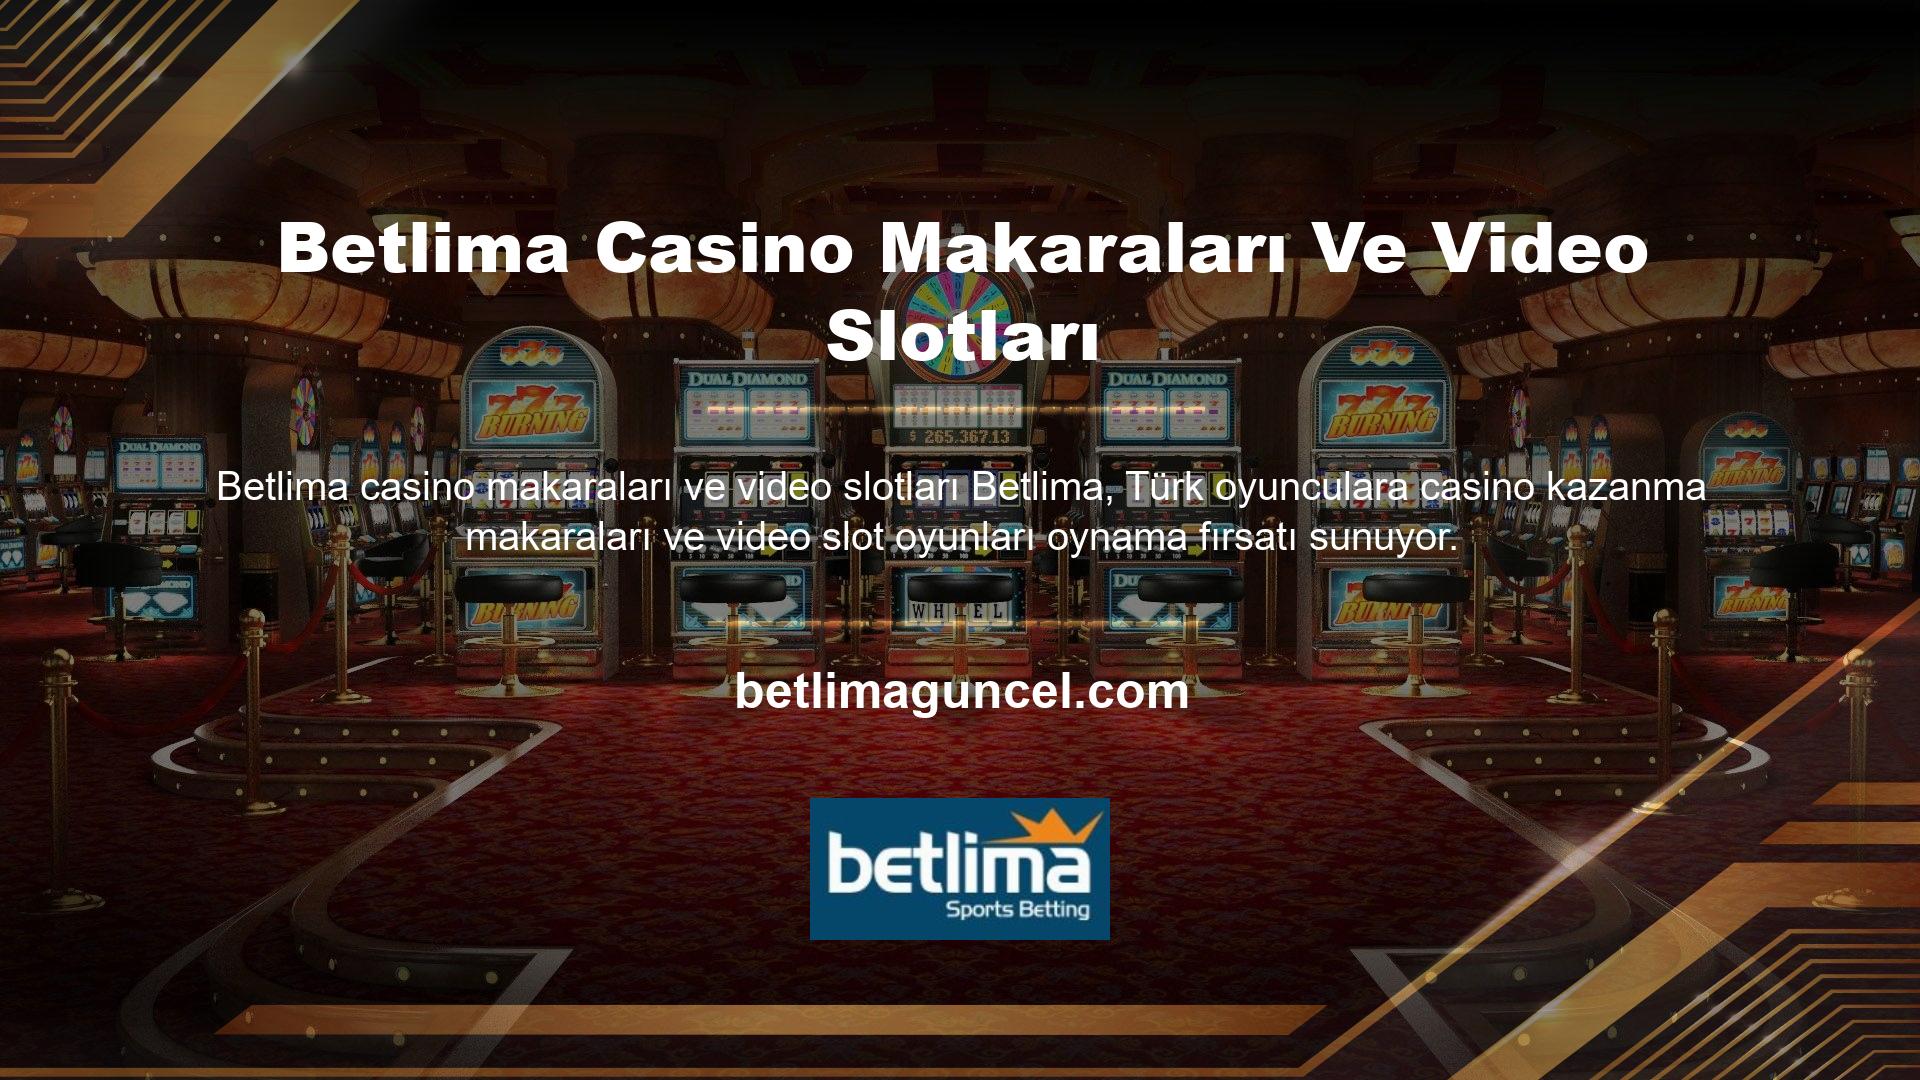 Betlima ayrıca canlı casino hizmeti de sunmaktadır